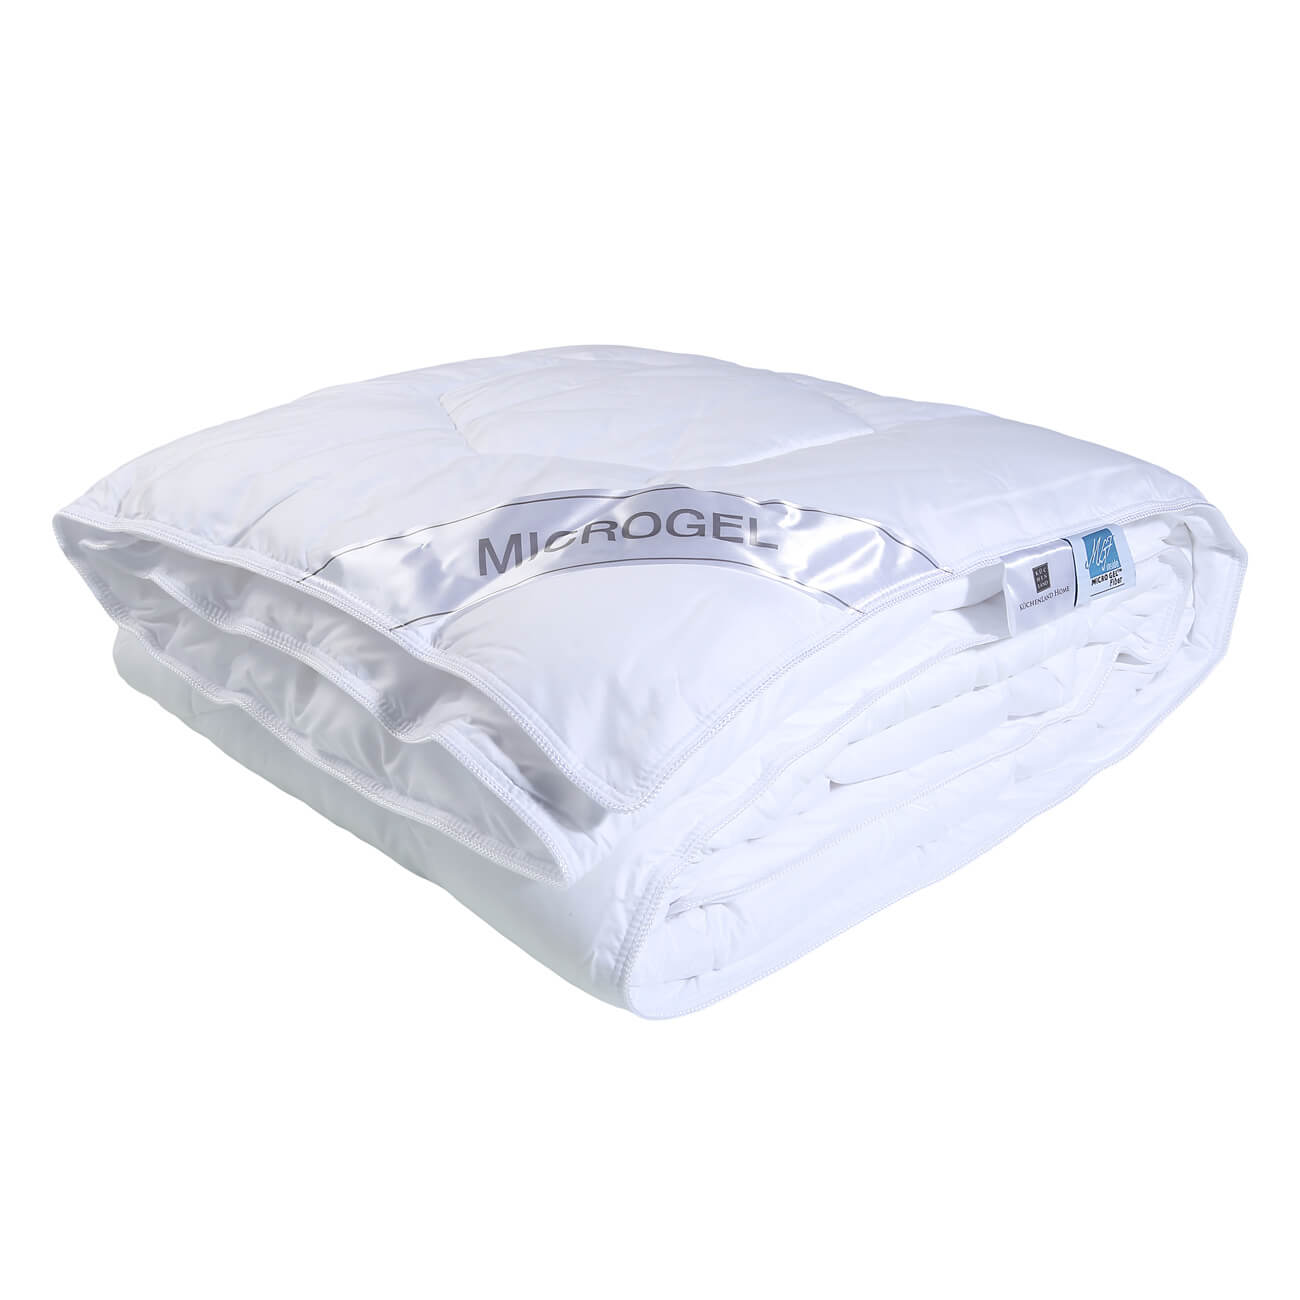 Одеяло, 140х200 см, микрофибра/микрогель, Microgel